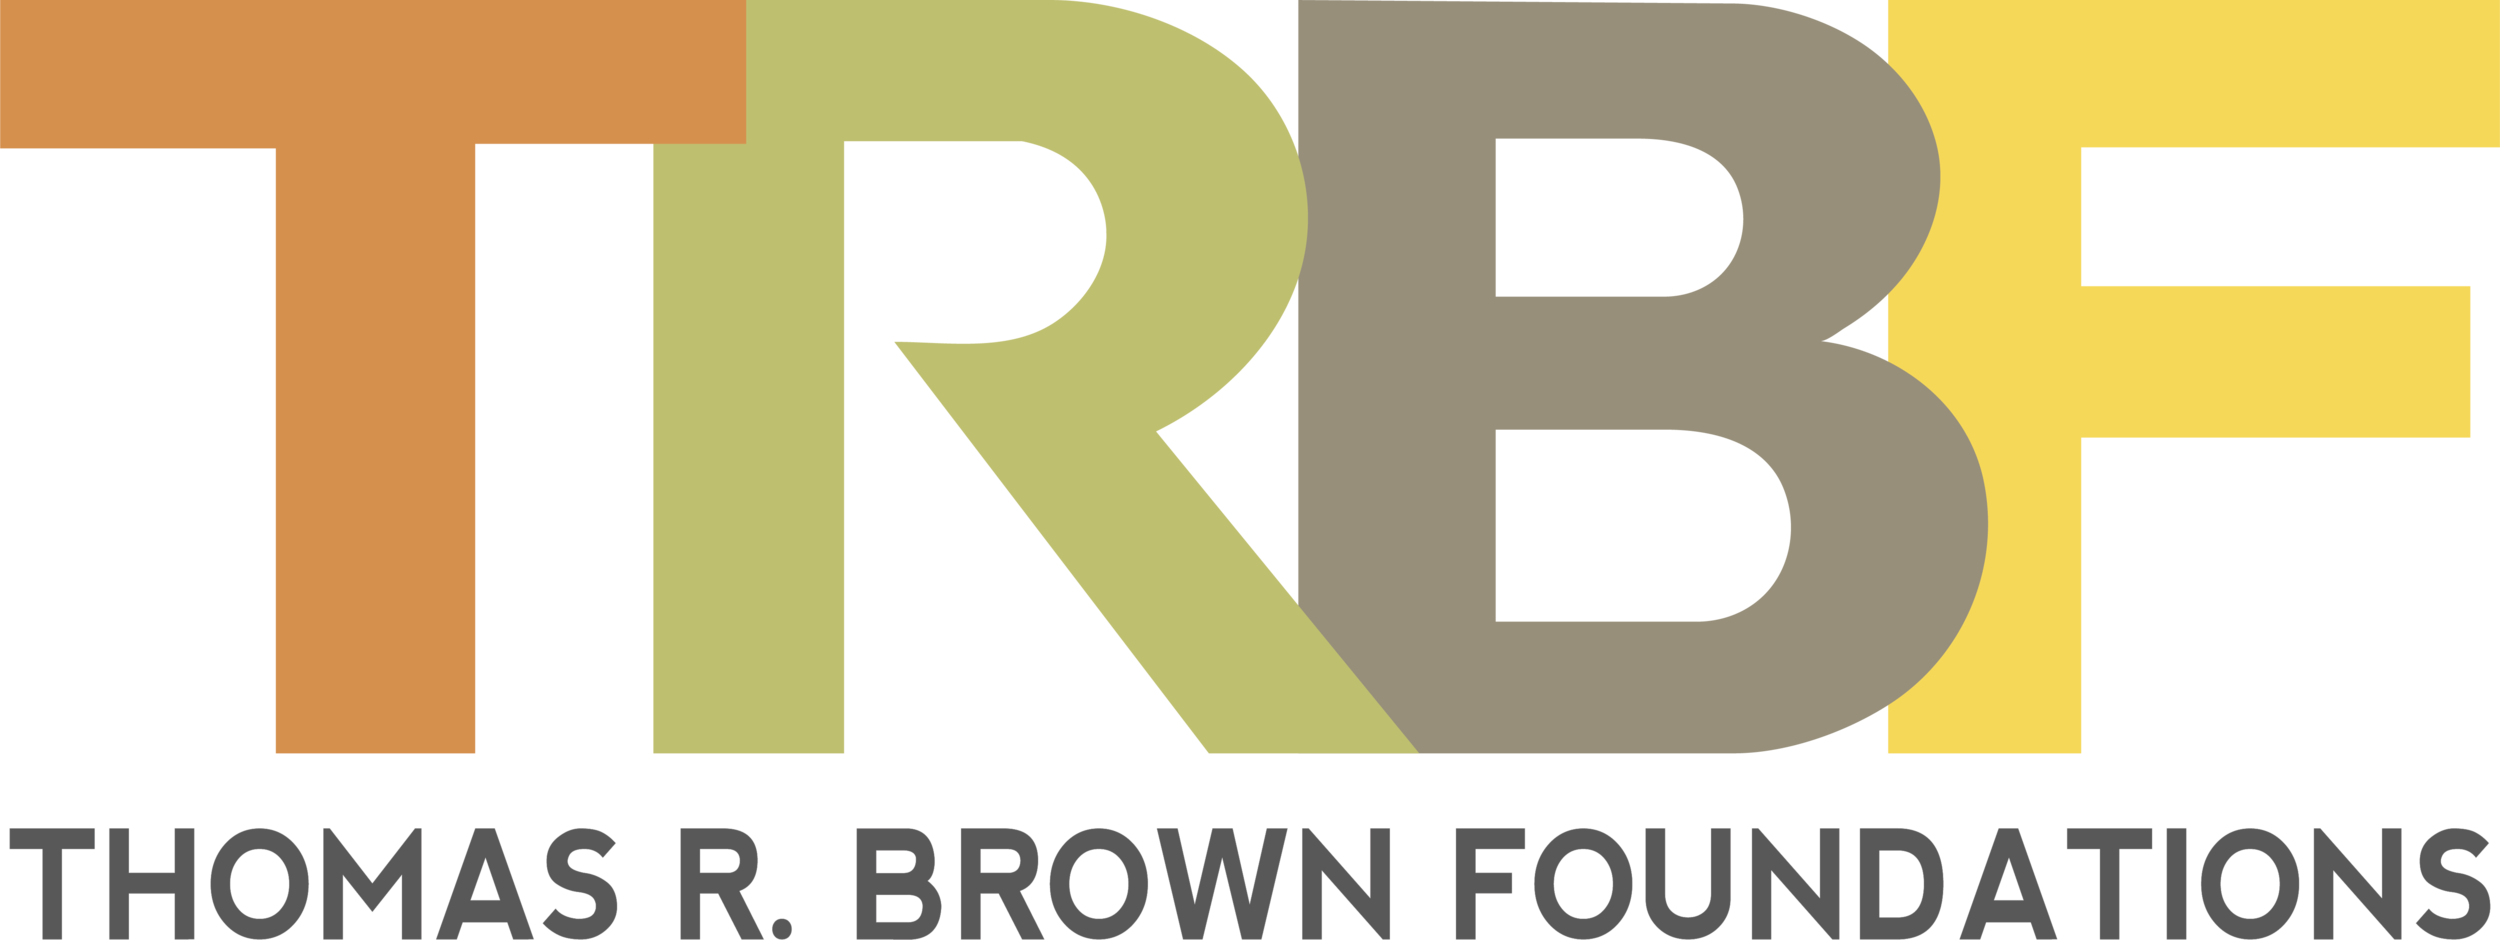 TRBF+logo+(gray-transparent)